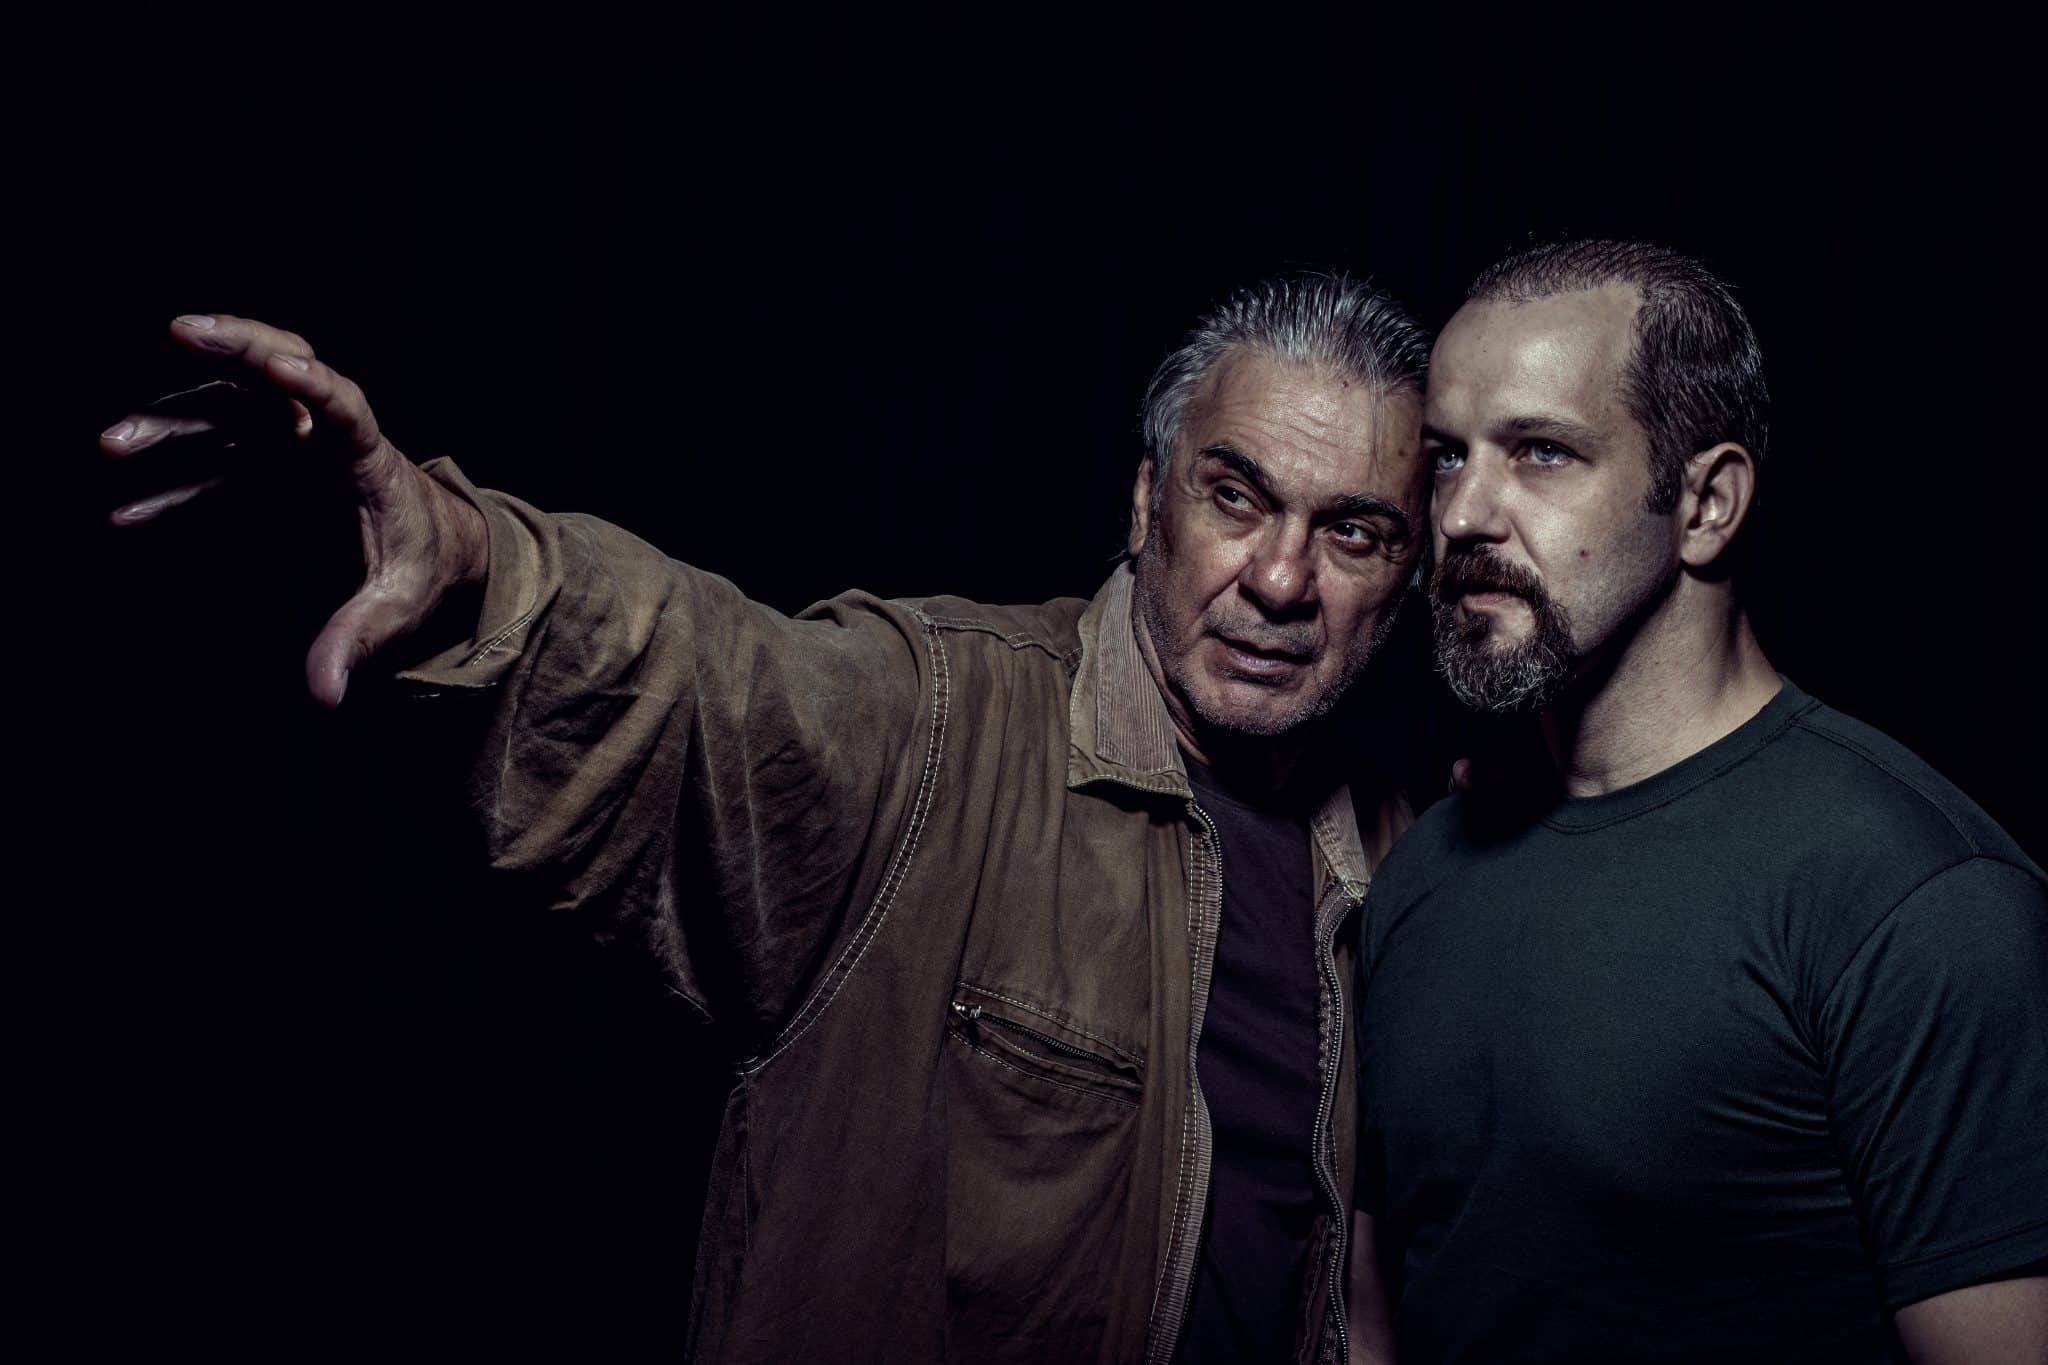 revistaprosaversoearte.com - Zécarlos Machado completa 50 anos de carreira com Papa Highirte no teatro